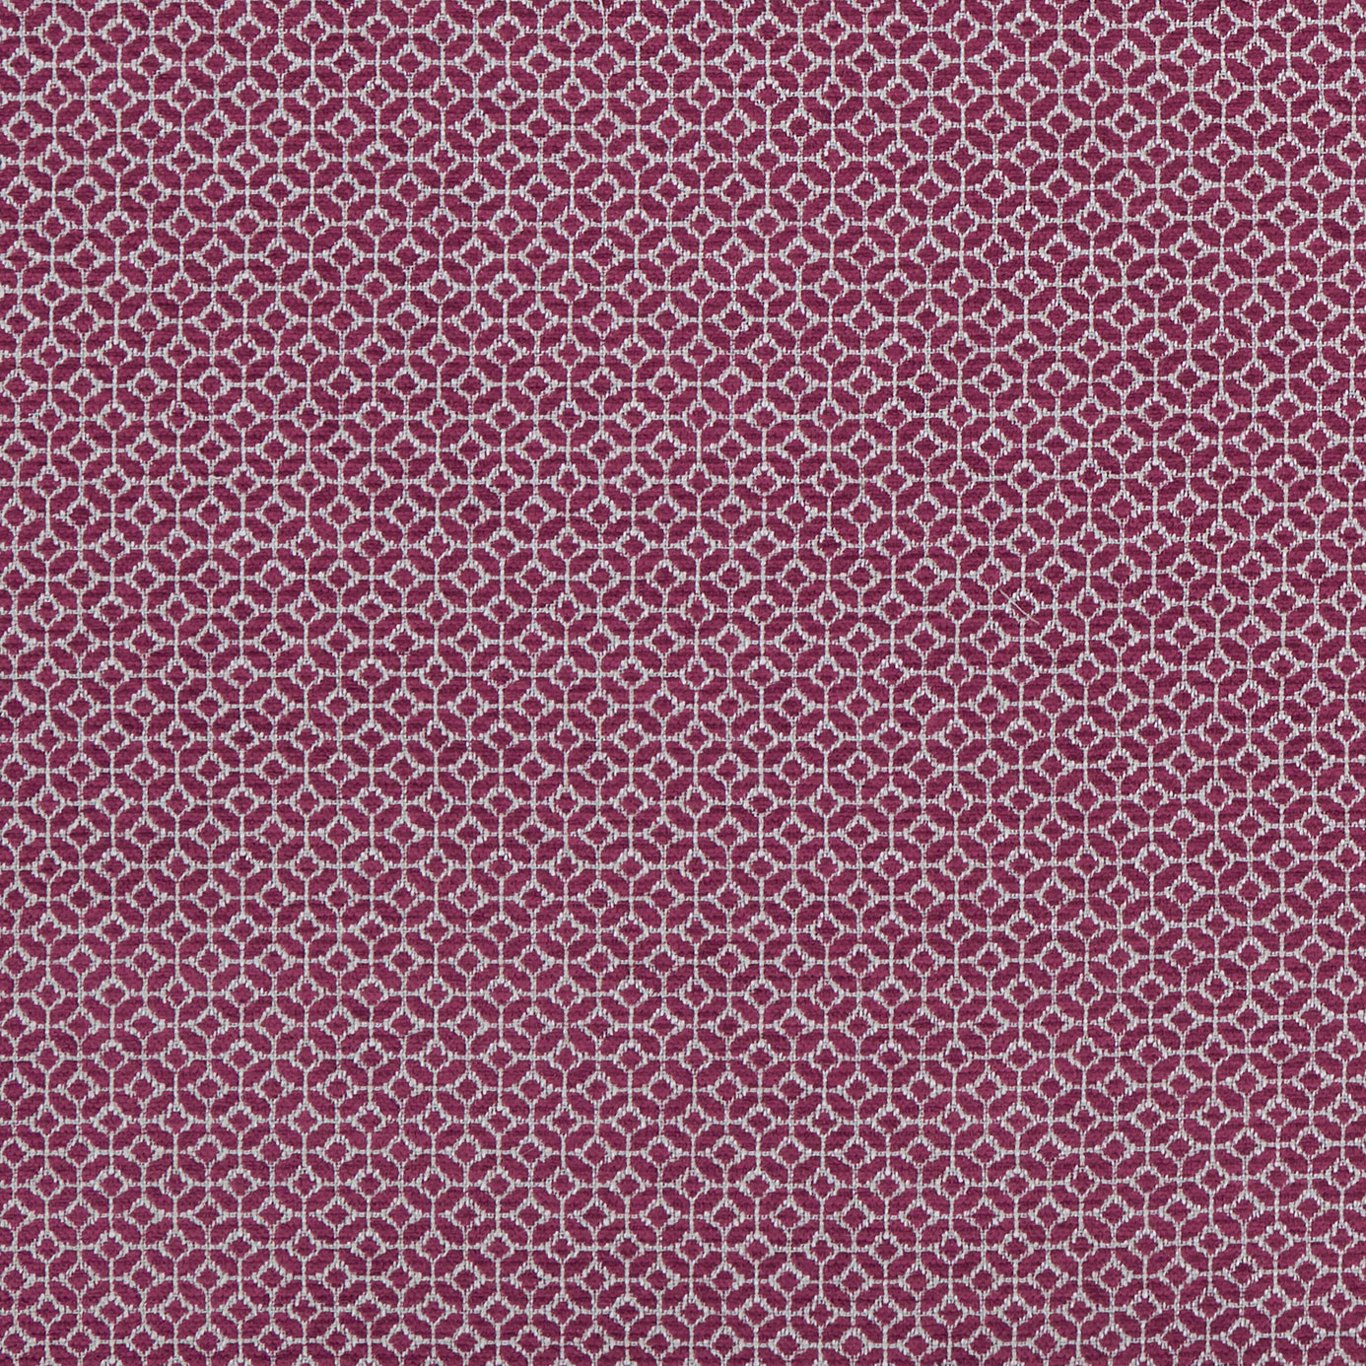 Orbit Raspberry Fabric by CNC